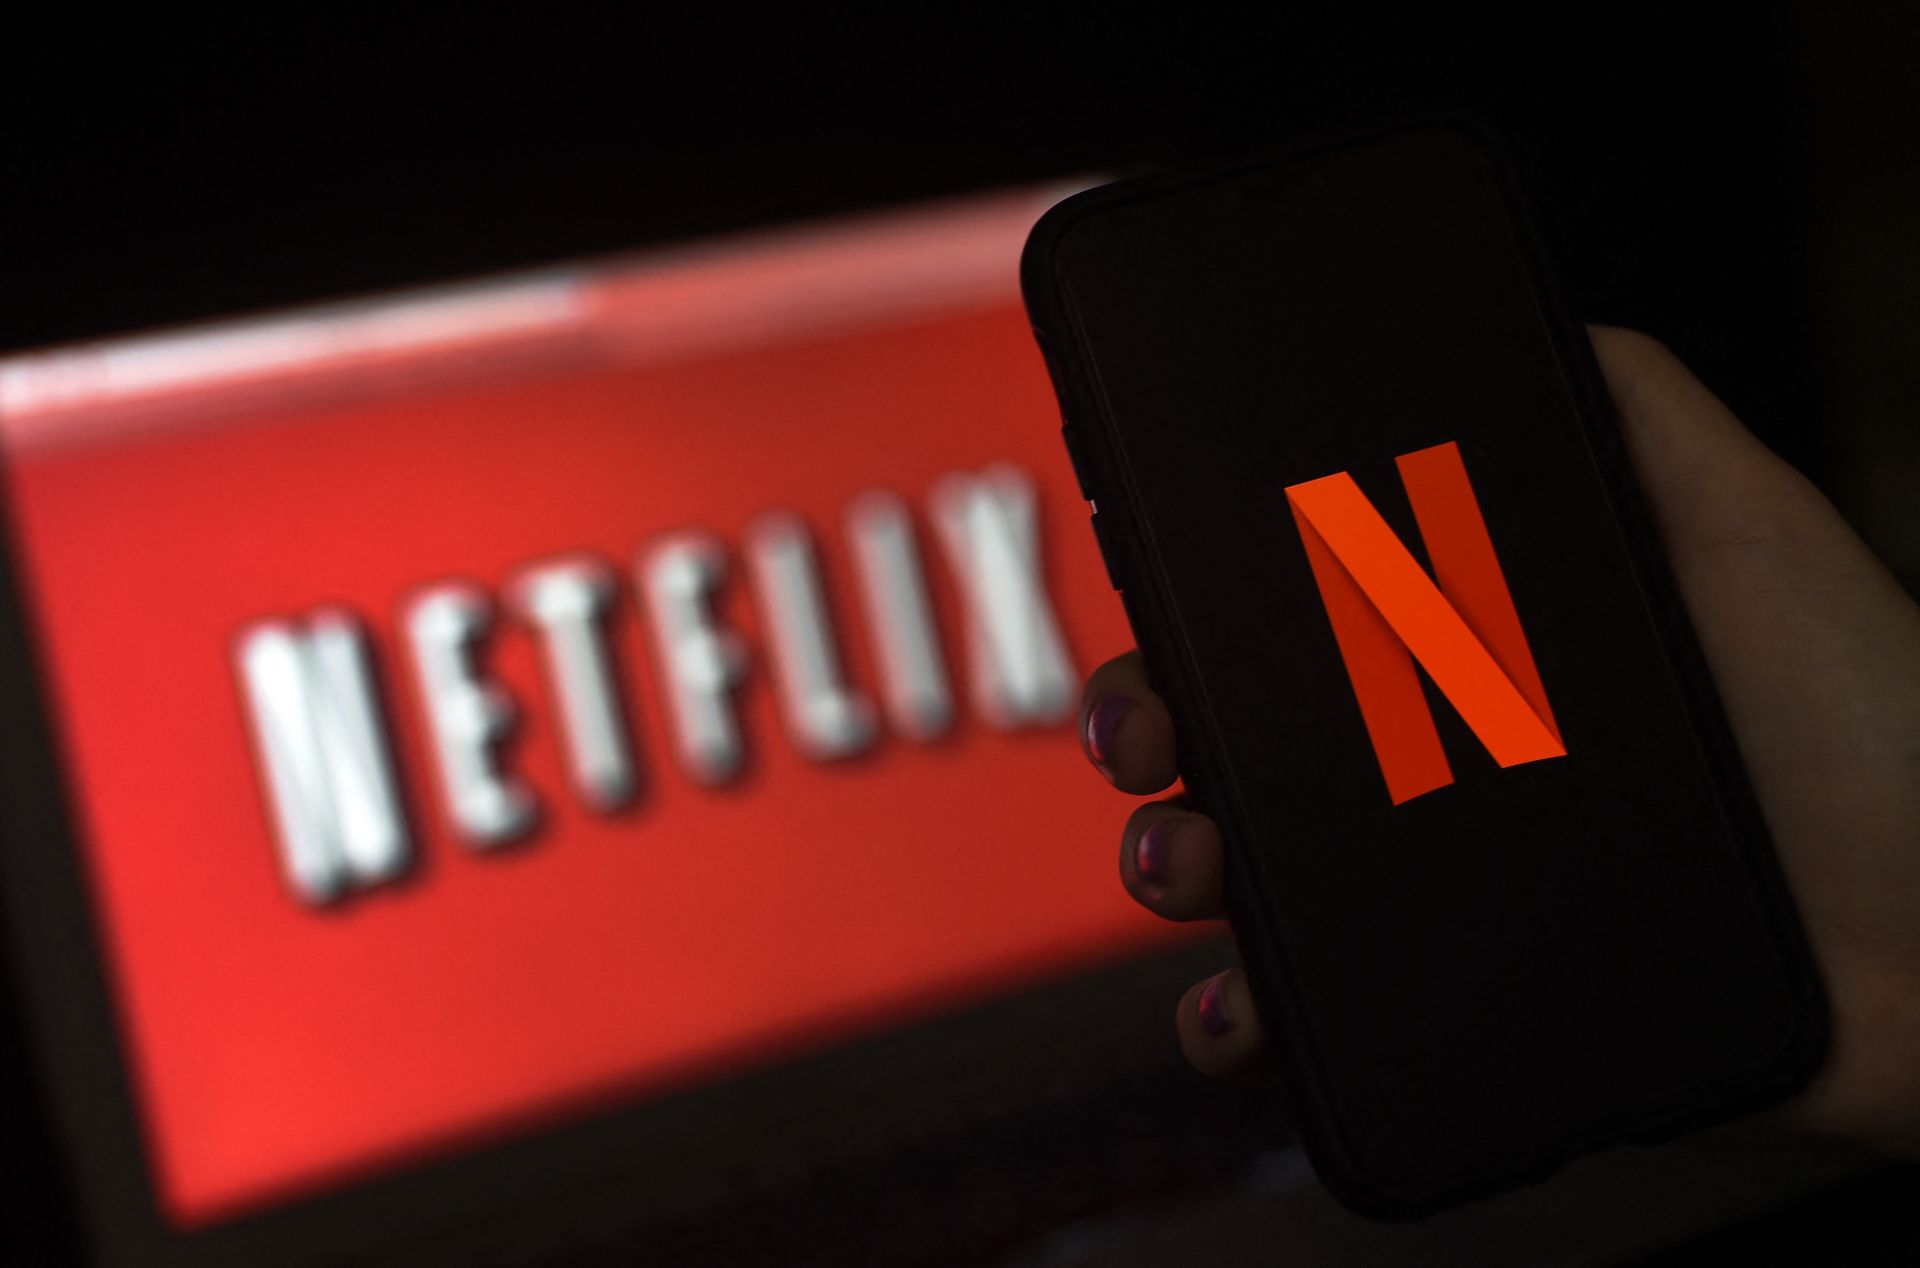 A Netflix közel áll ahhoz, hogy nagyobb legyen a piaci értéke, mint a Disney-nek